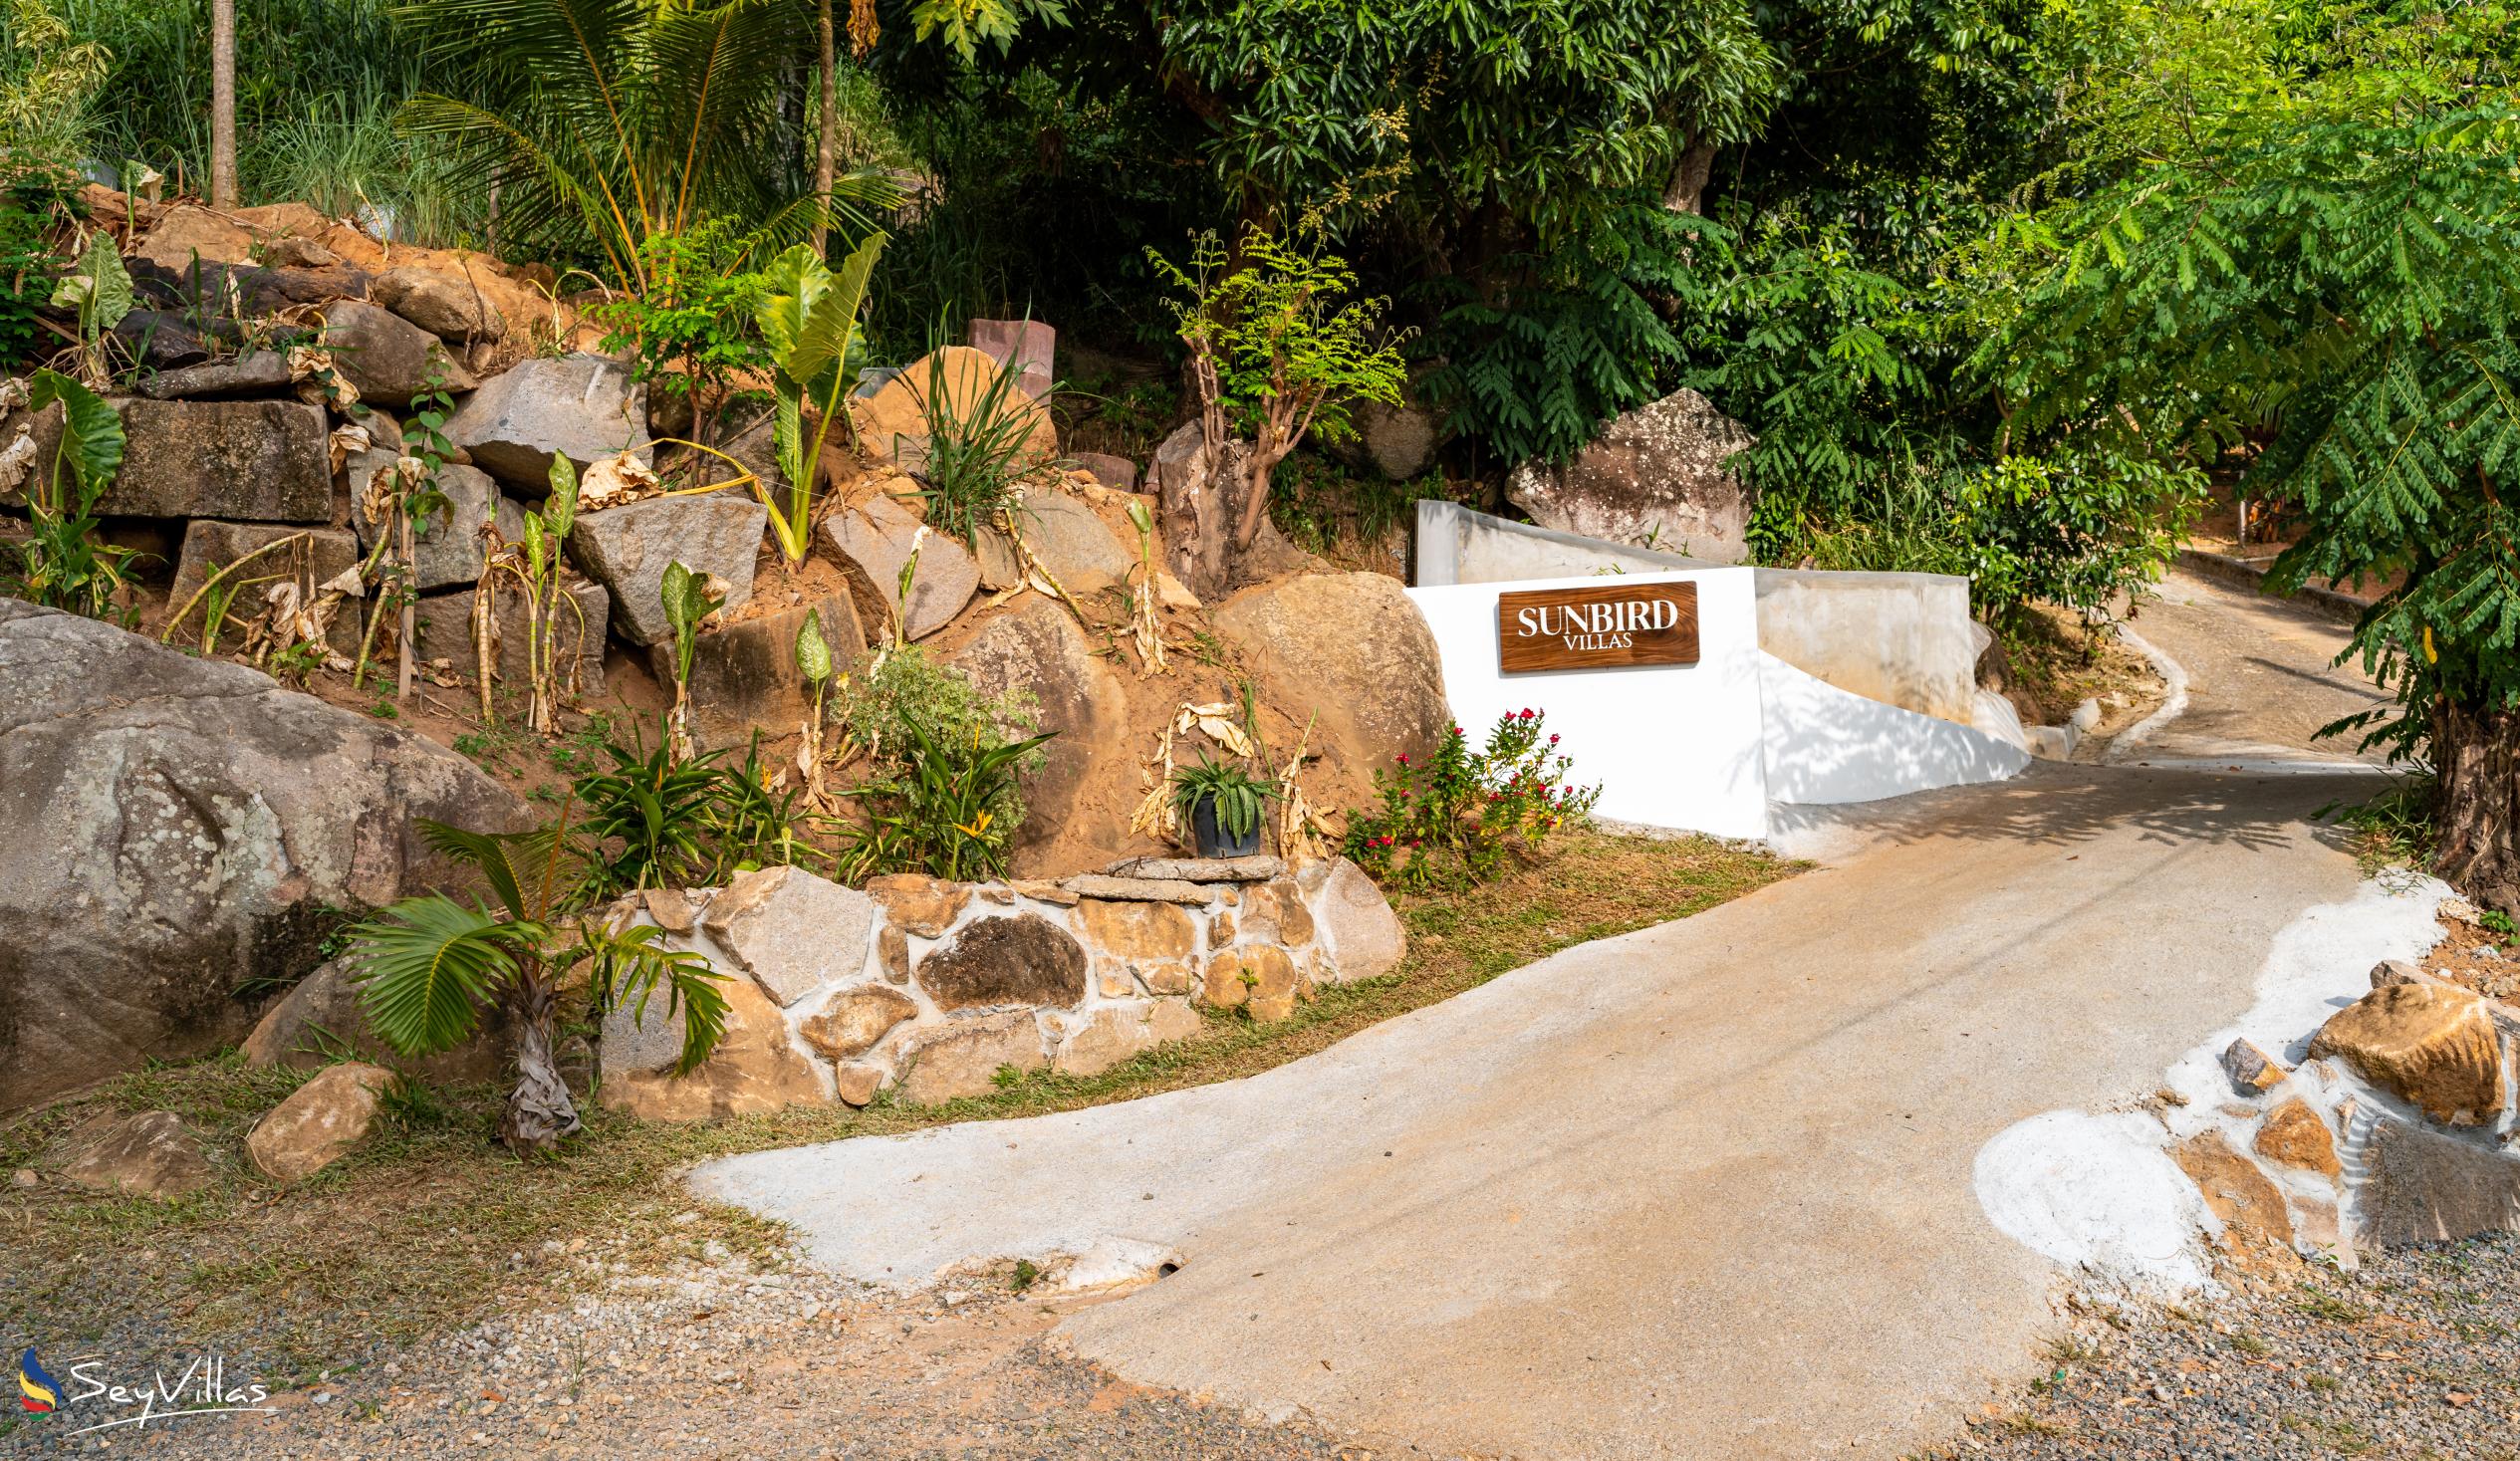 Photo 16: Sunbird Villas - Outdoor area - Mahé (Seychelles)